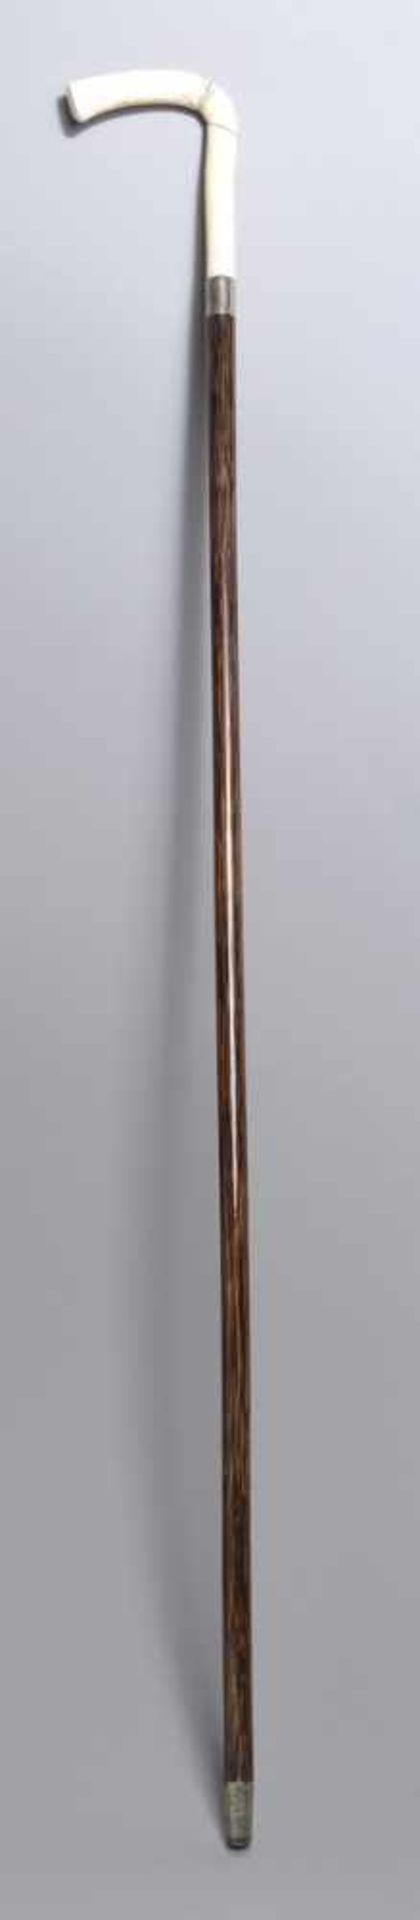 Spazierstock, um 1900, brauner Holzschaft, Griff aus Elfenbein, L 87 cm, Griff mitTrockenrissen